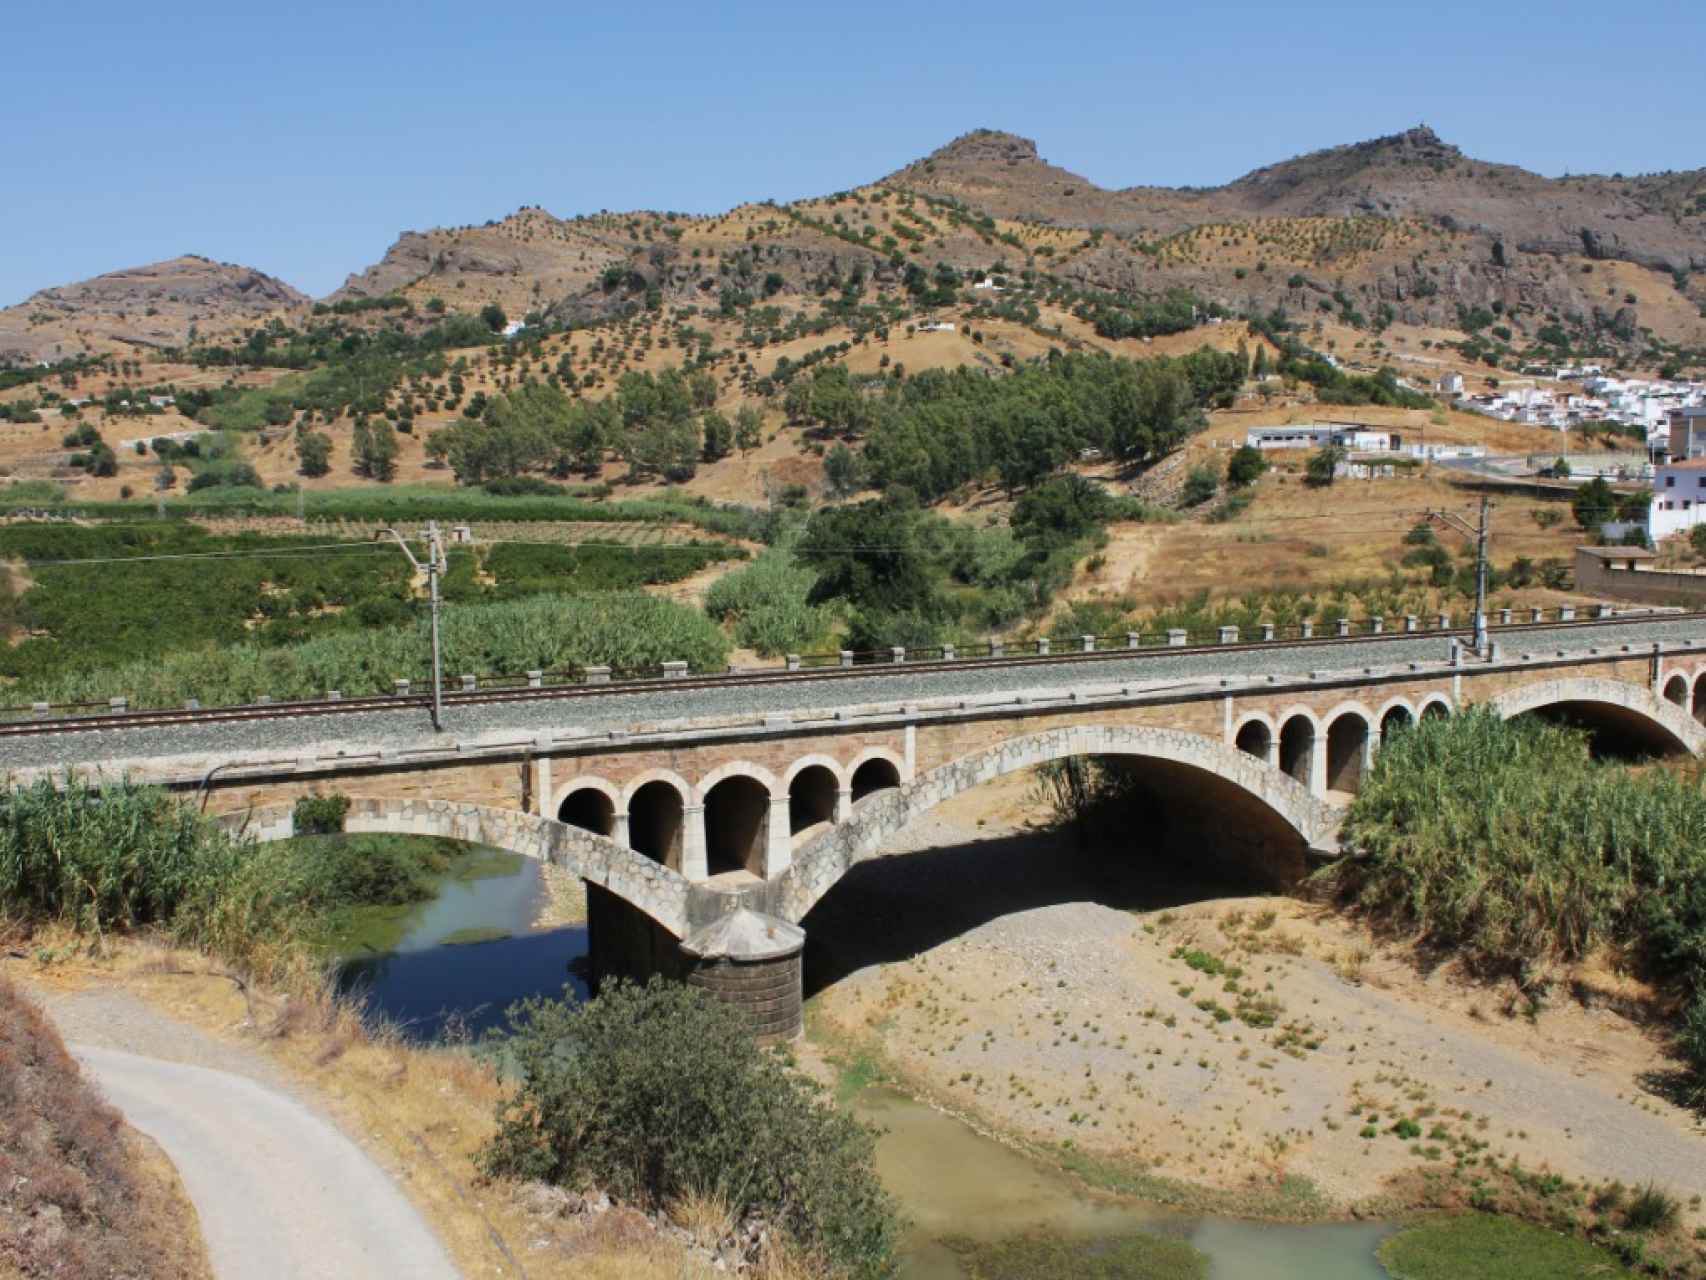 Las vías del tren atraviesan a través de un puente el río Guadalhorce.